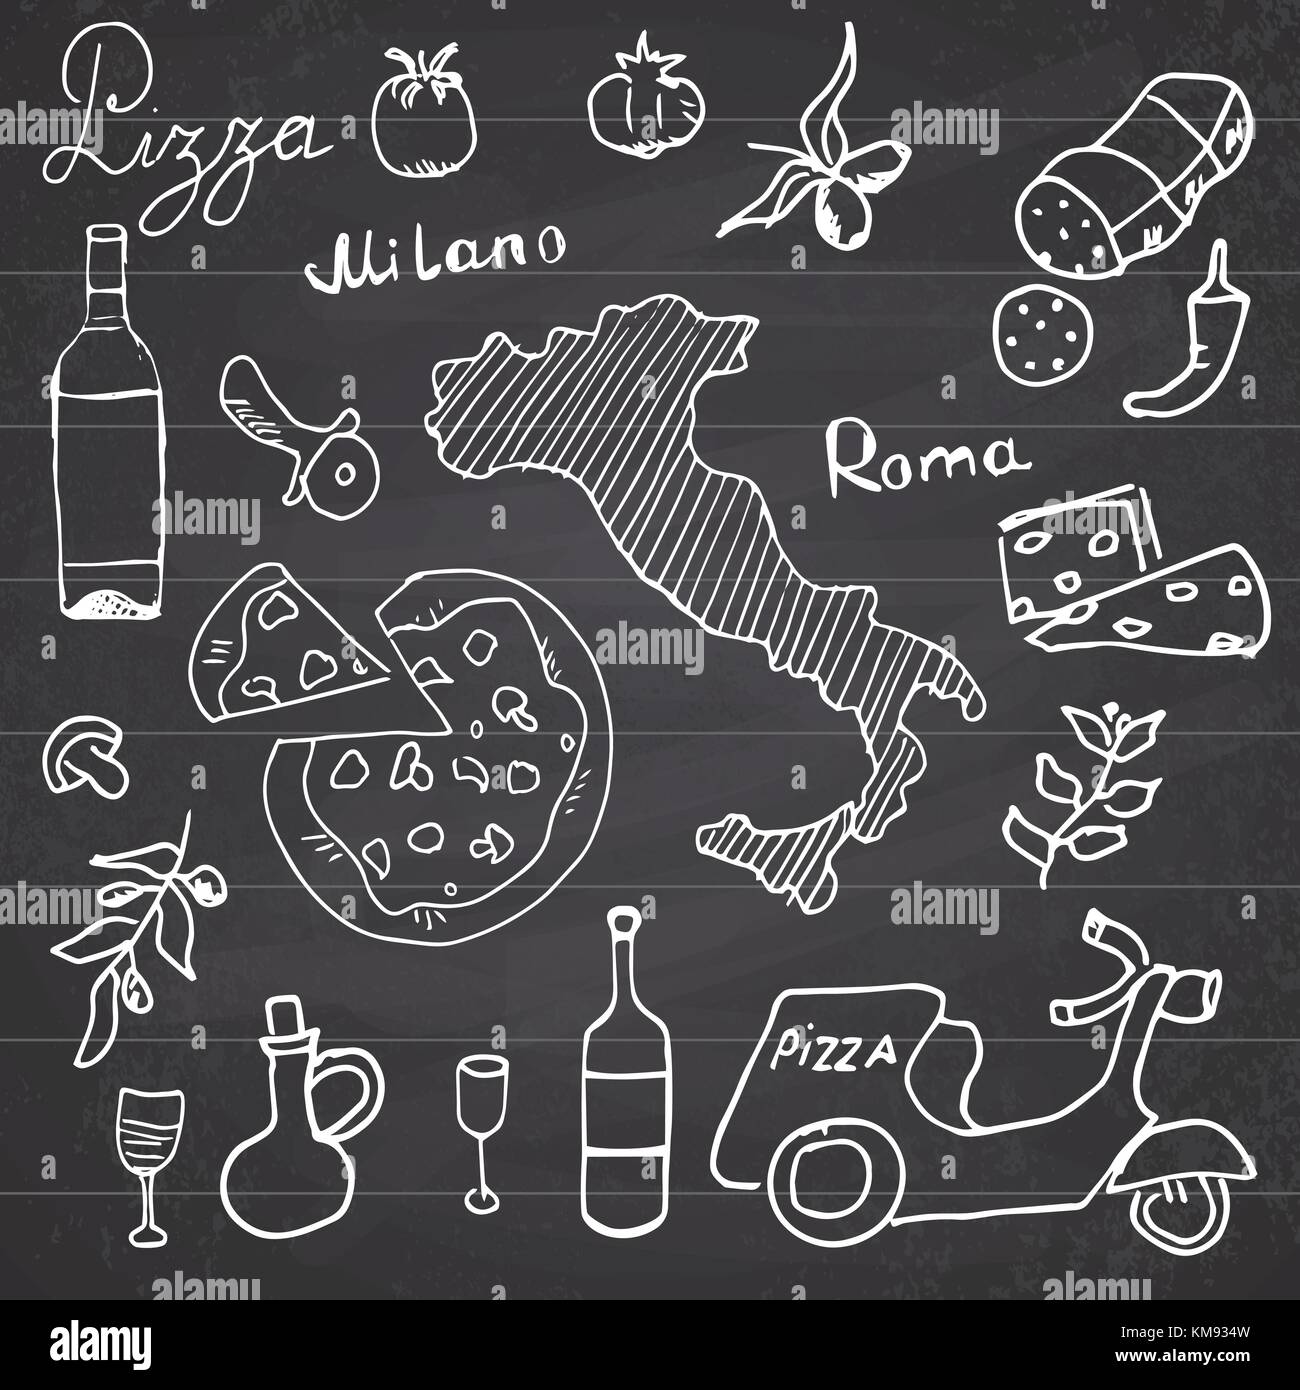 Italien Elemente doodles. Hand gezeichnet mit pizza Roller, Wein, Käse und Karte fest. Zeichnung doodle Sammlung, am schwarzen Brett Hintergrund. Stock Vektor